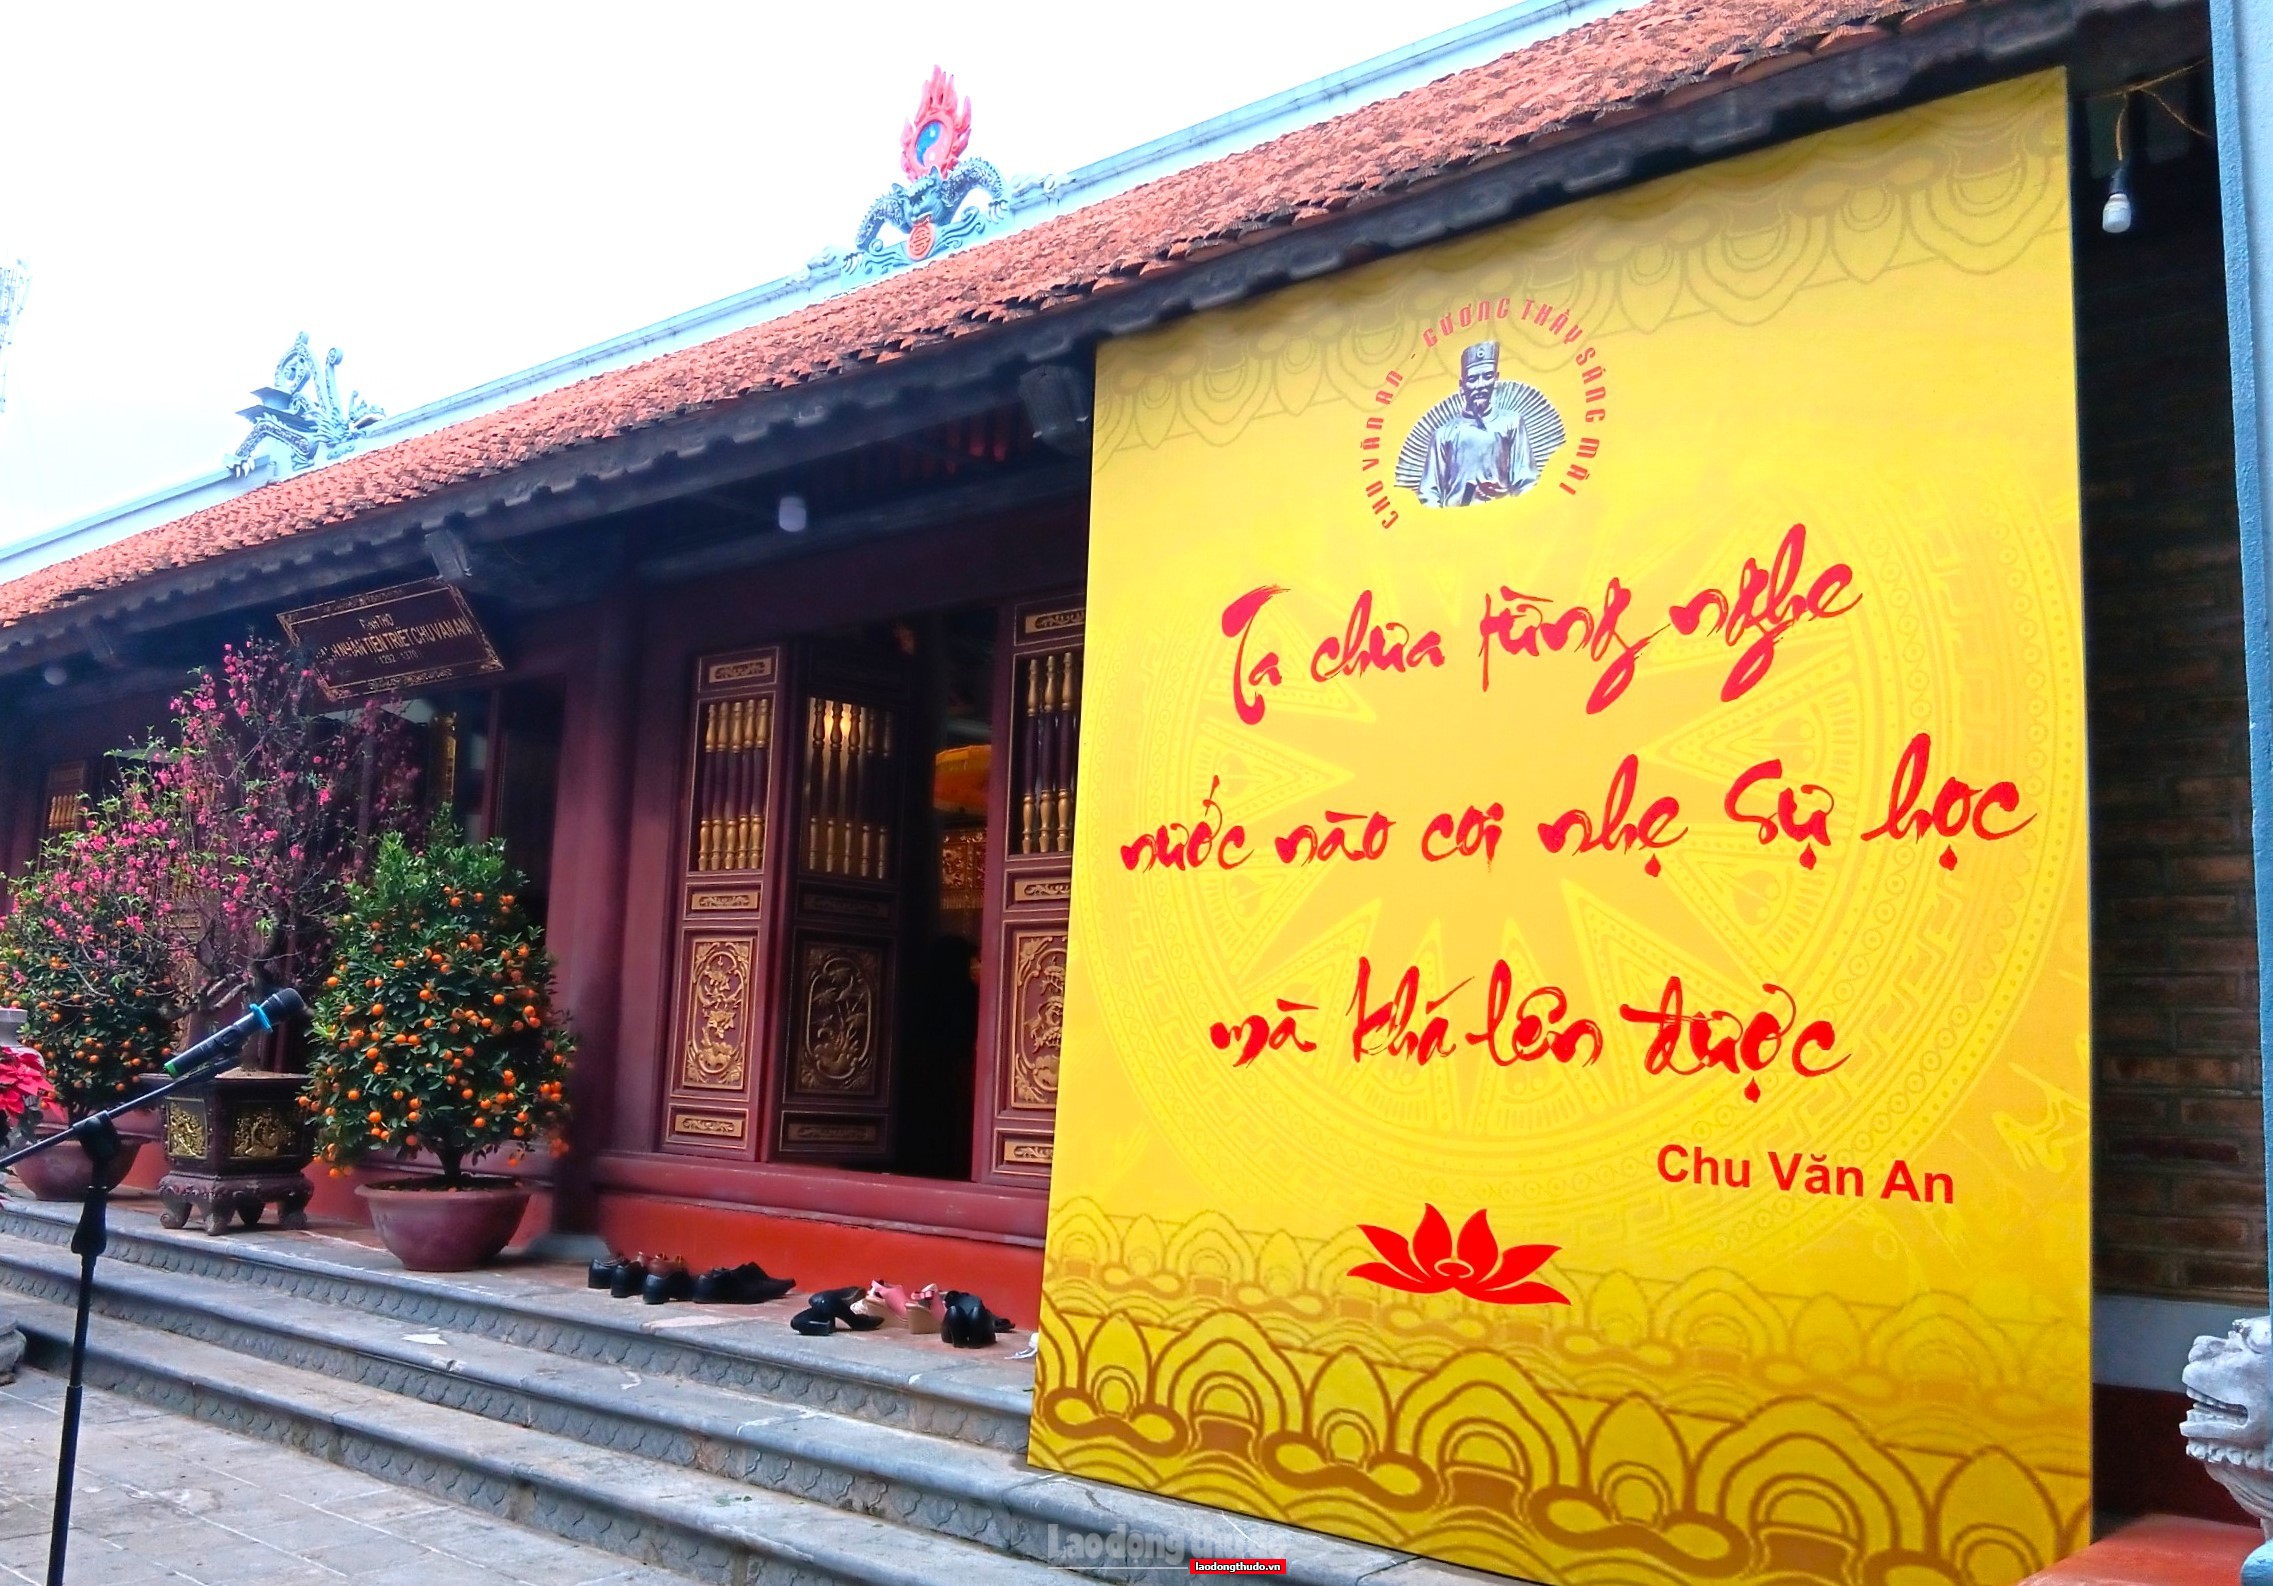 Đình thờ Danh nhân tiên triết Chu Văn An: Sáng mãi nét đẹp văn hóa Hà Nội